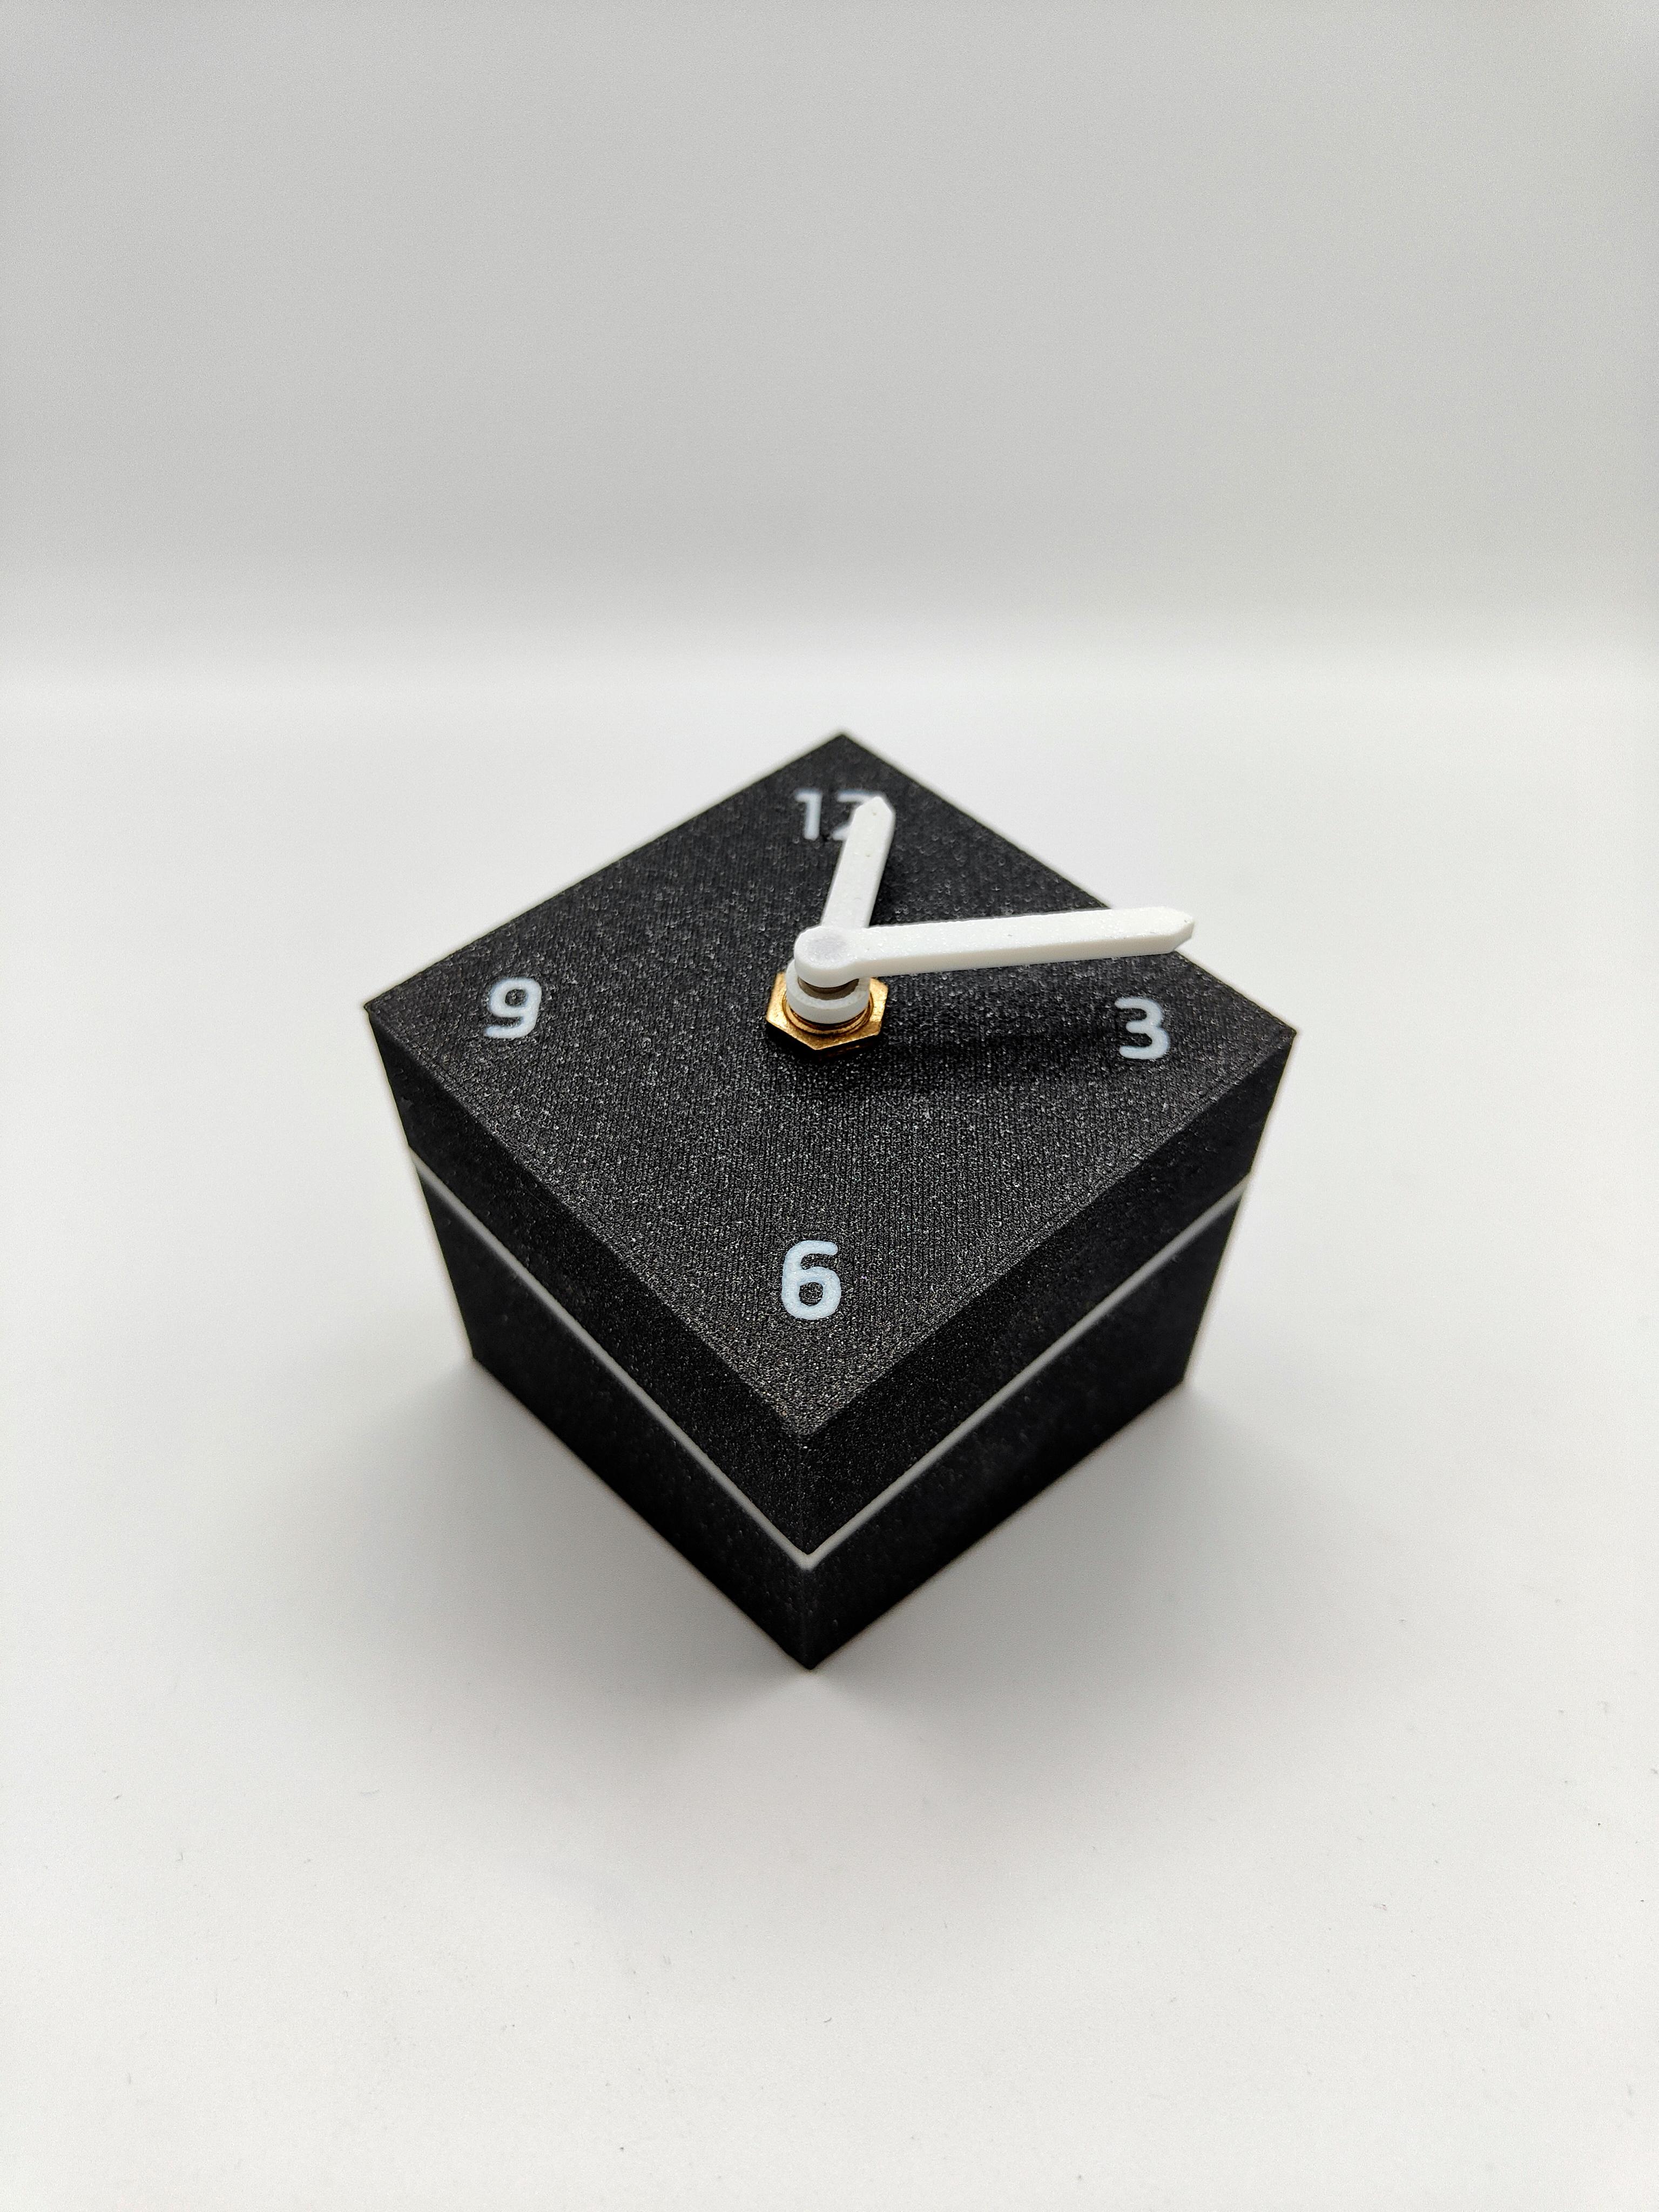 Qbe Clock 3d model